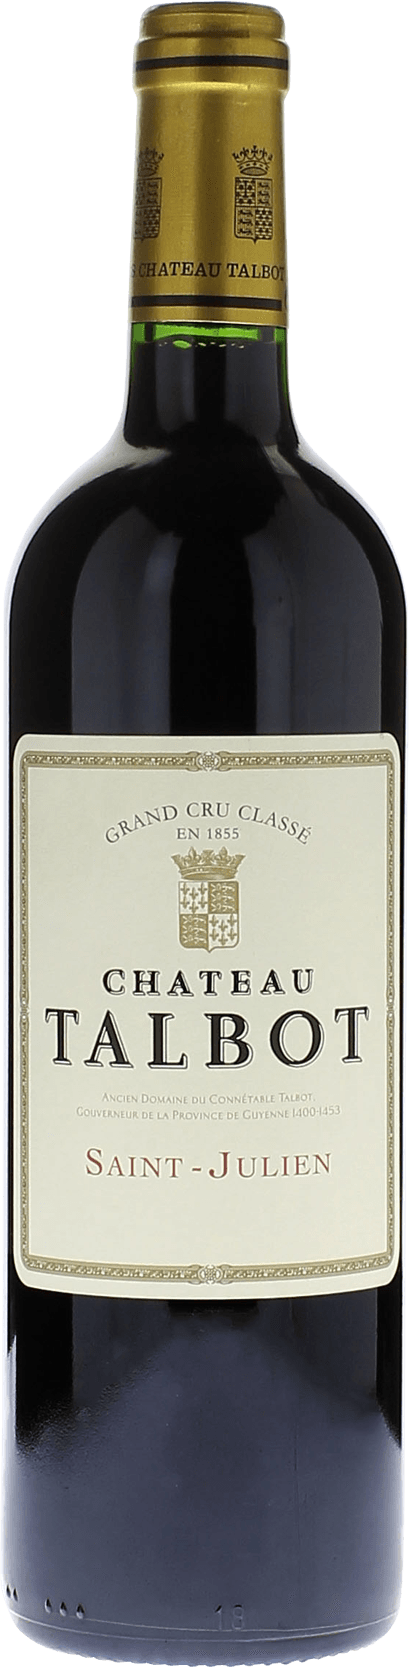 Talbot 2006 4me Grand cru class Saint-Julien, Bordeaux rouge